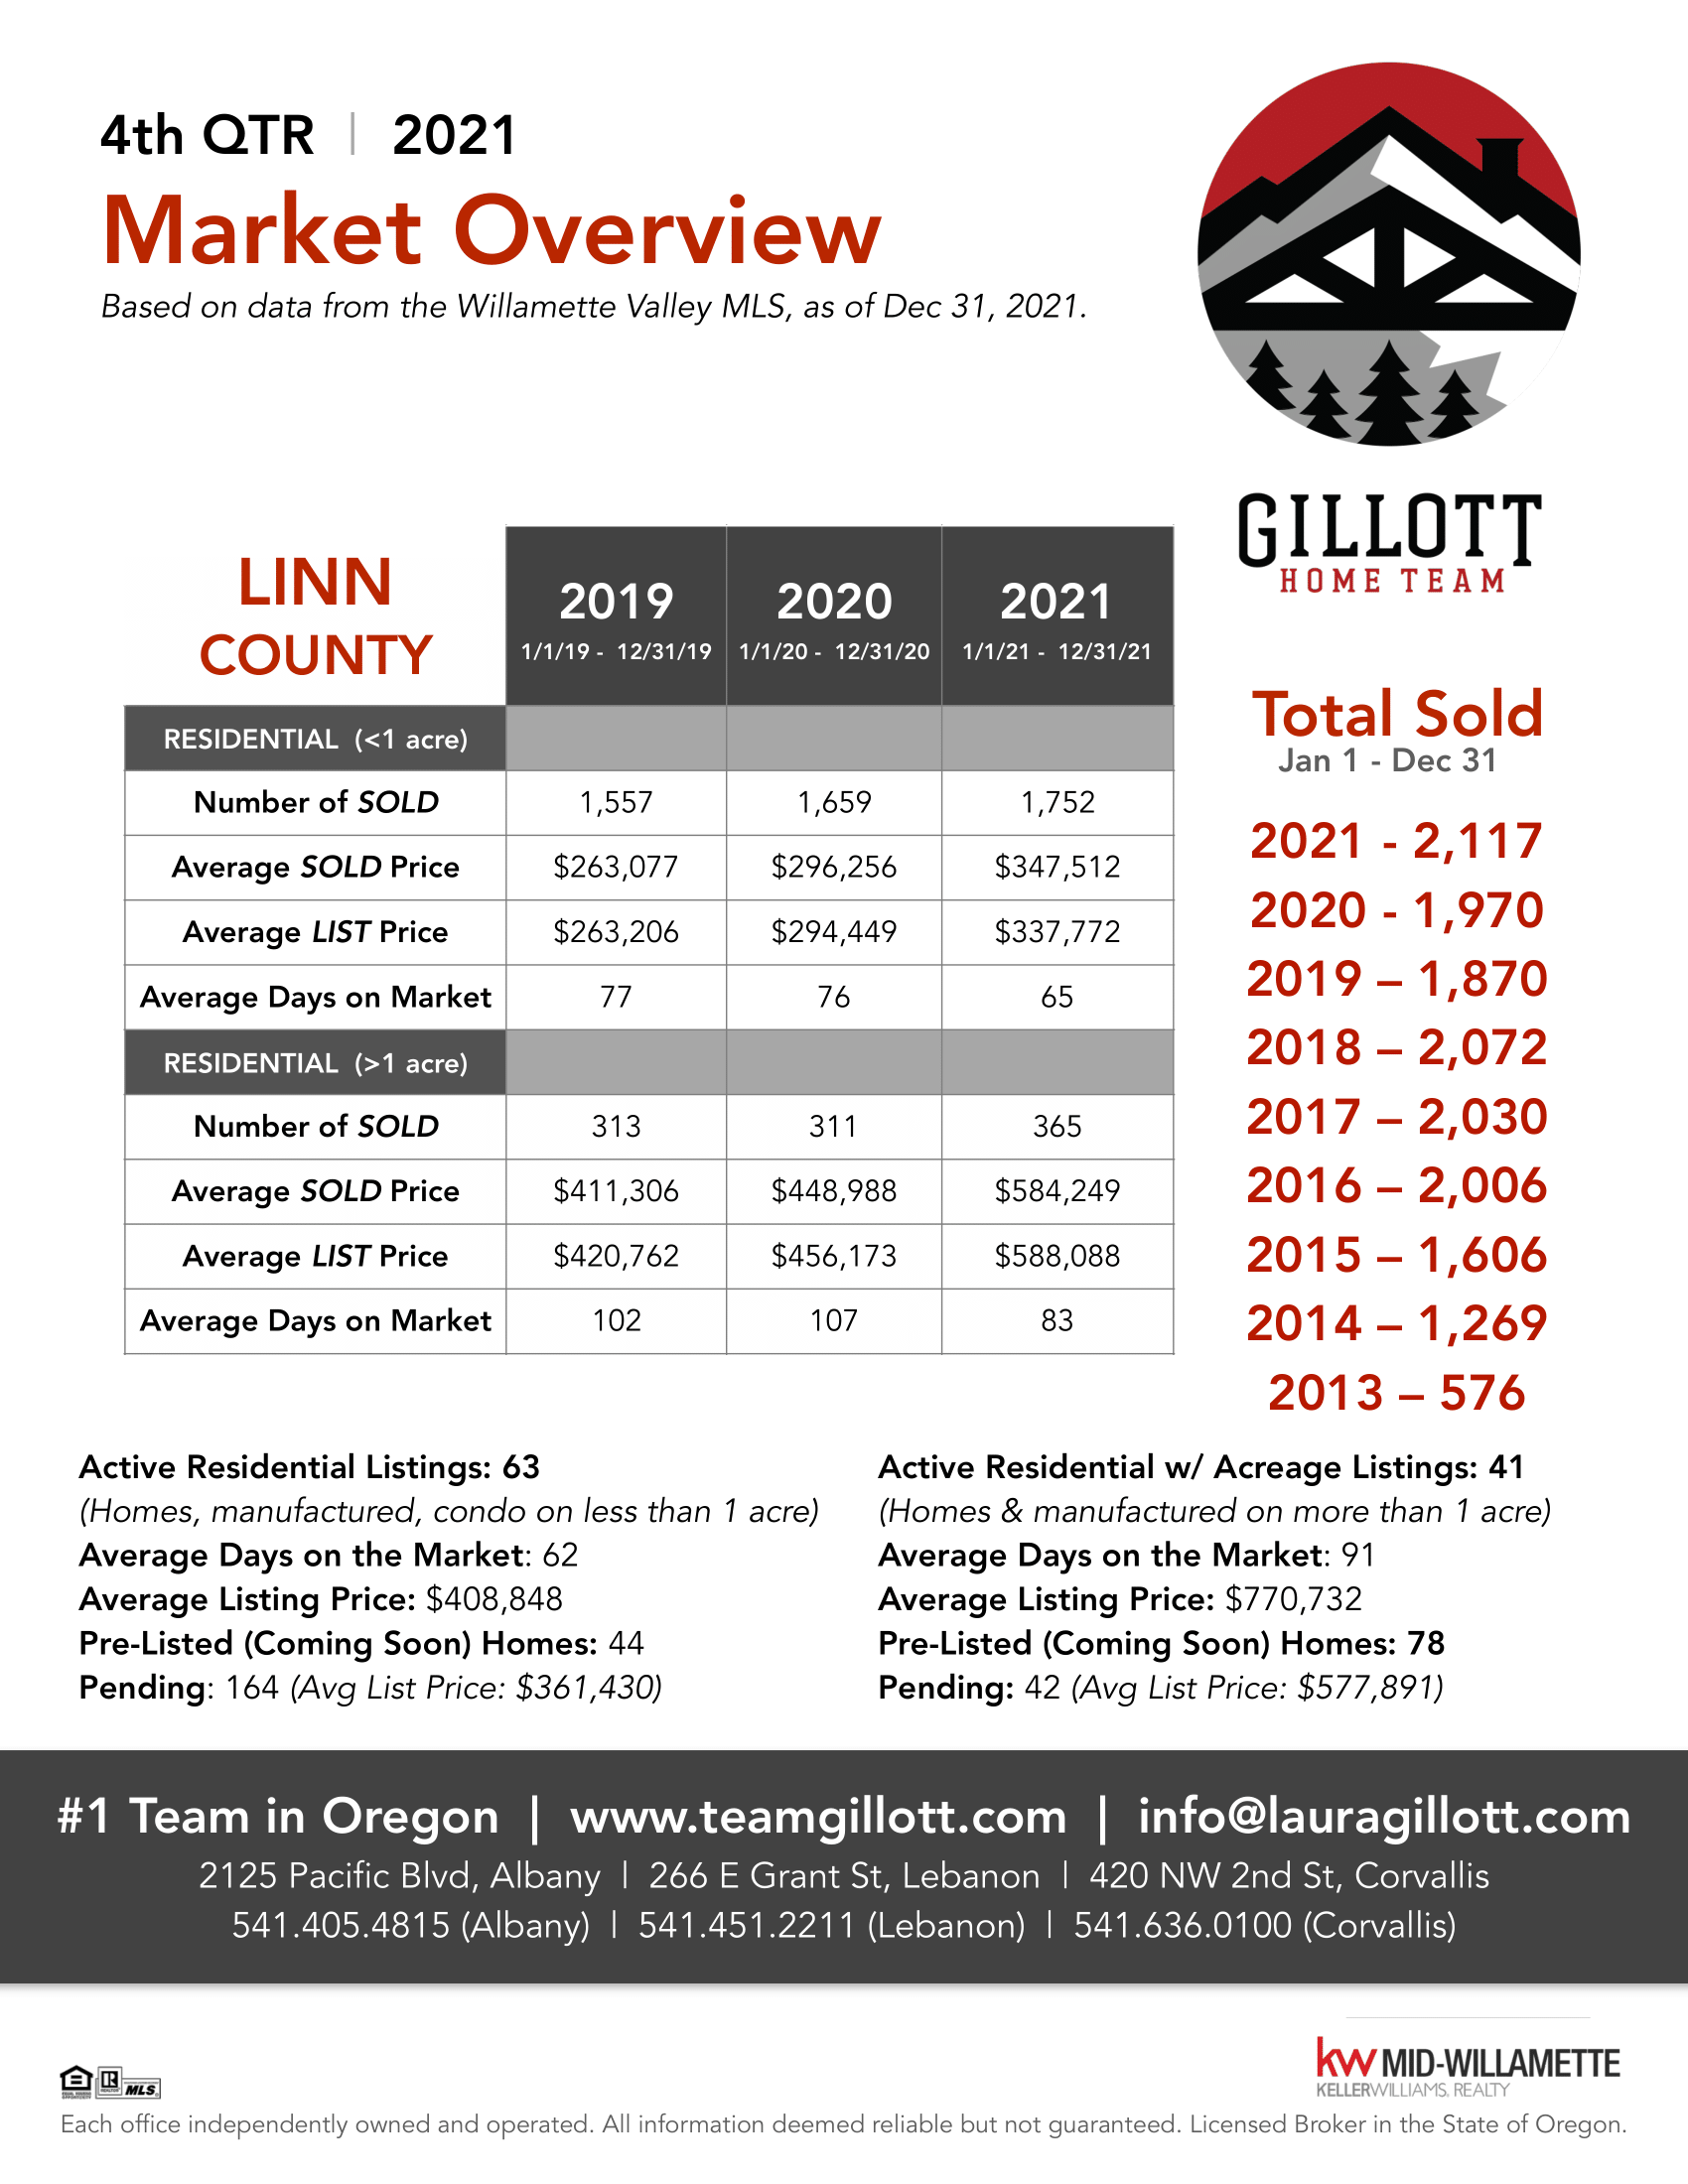 4th Qtr Linn Co. 2021 PDF updated-1.png